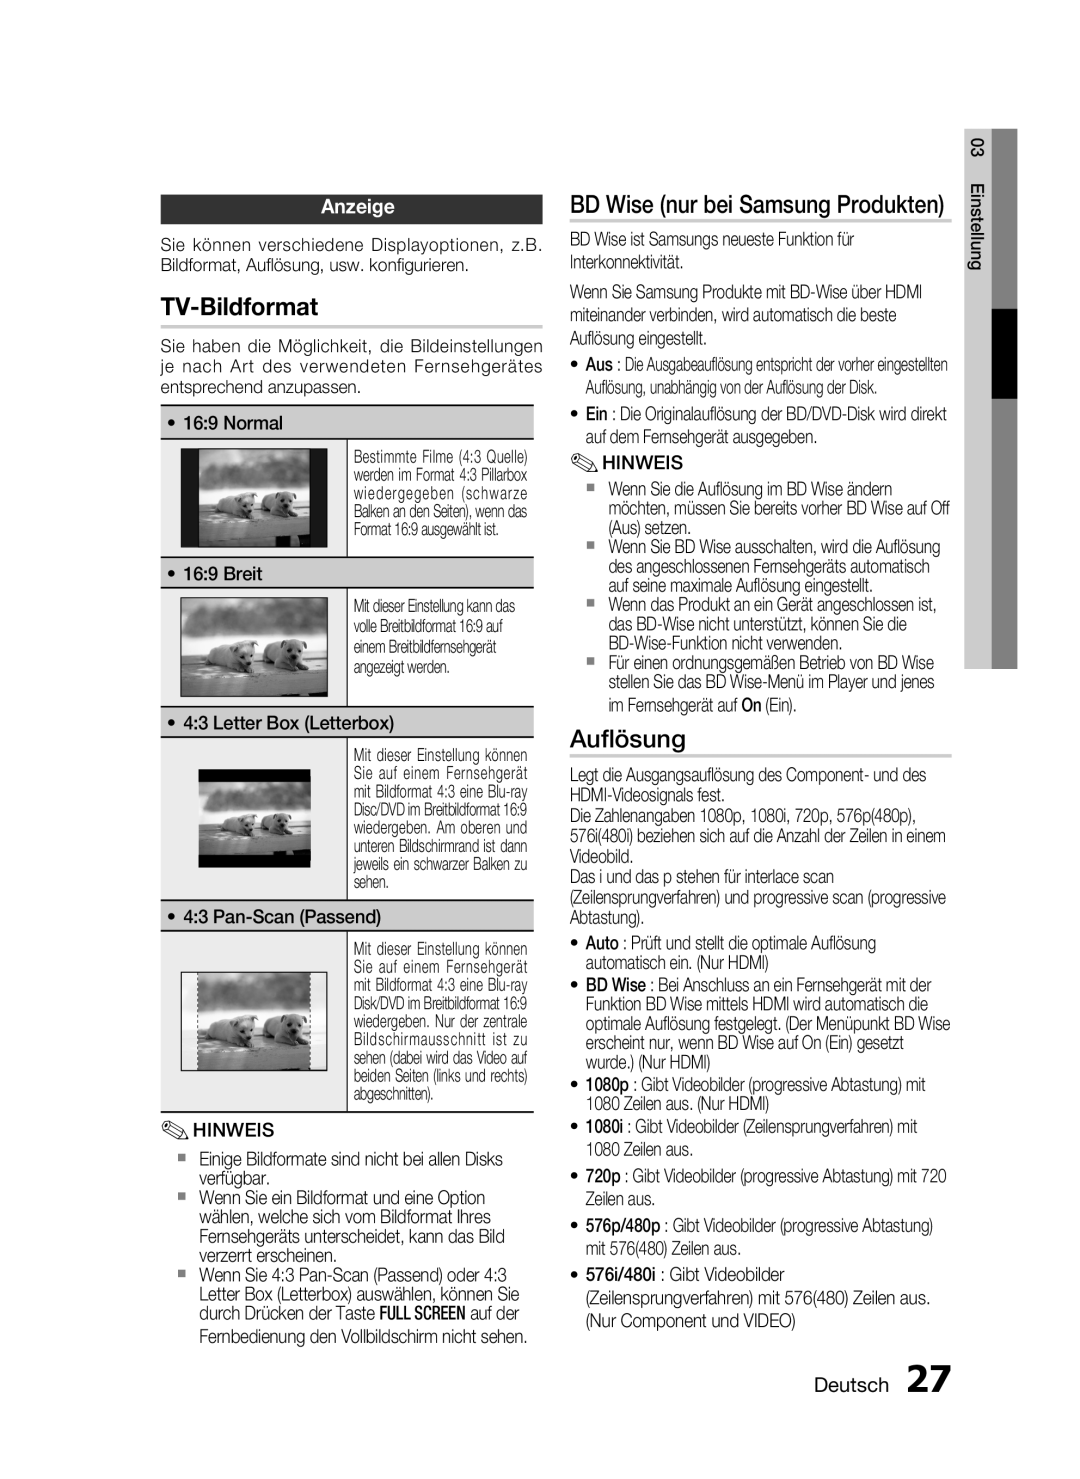 Samsung HT-C6200/XEN, HT-C6200/EDC manual TV-Bildformat, Auﬂösung, BD Wise nur bei Samsung Produkten, Anzeige, Deutsch 